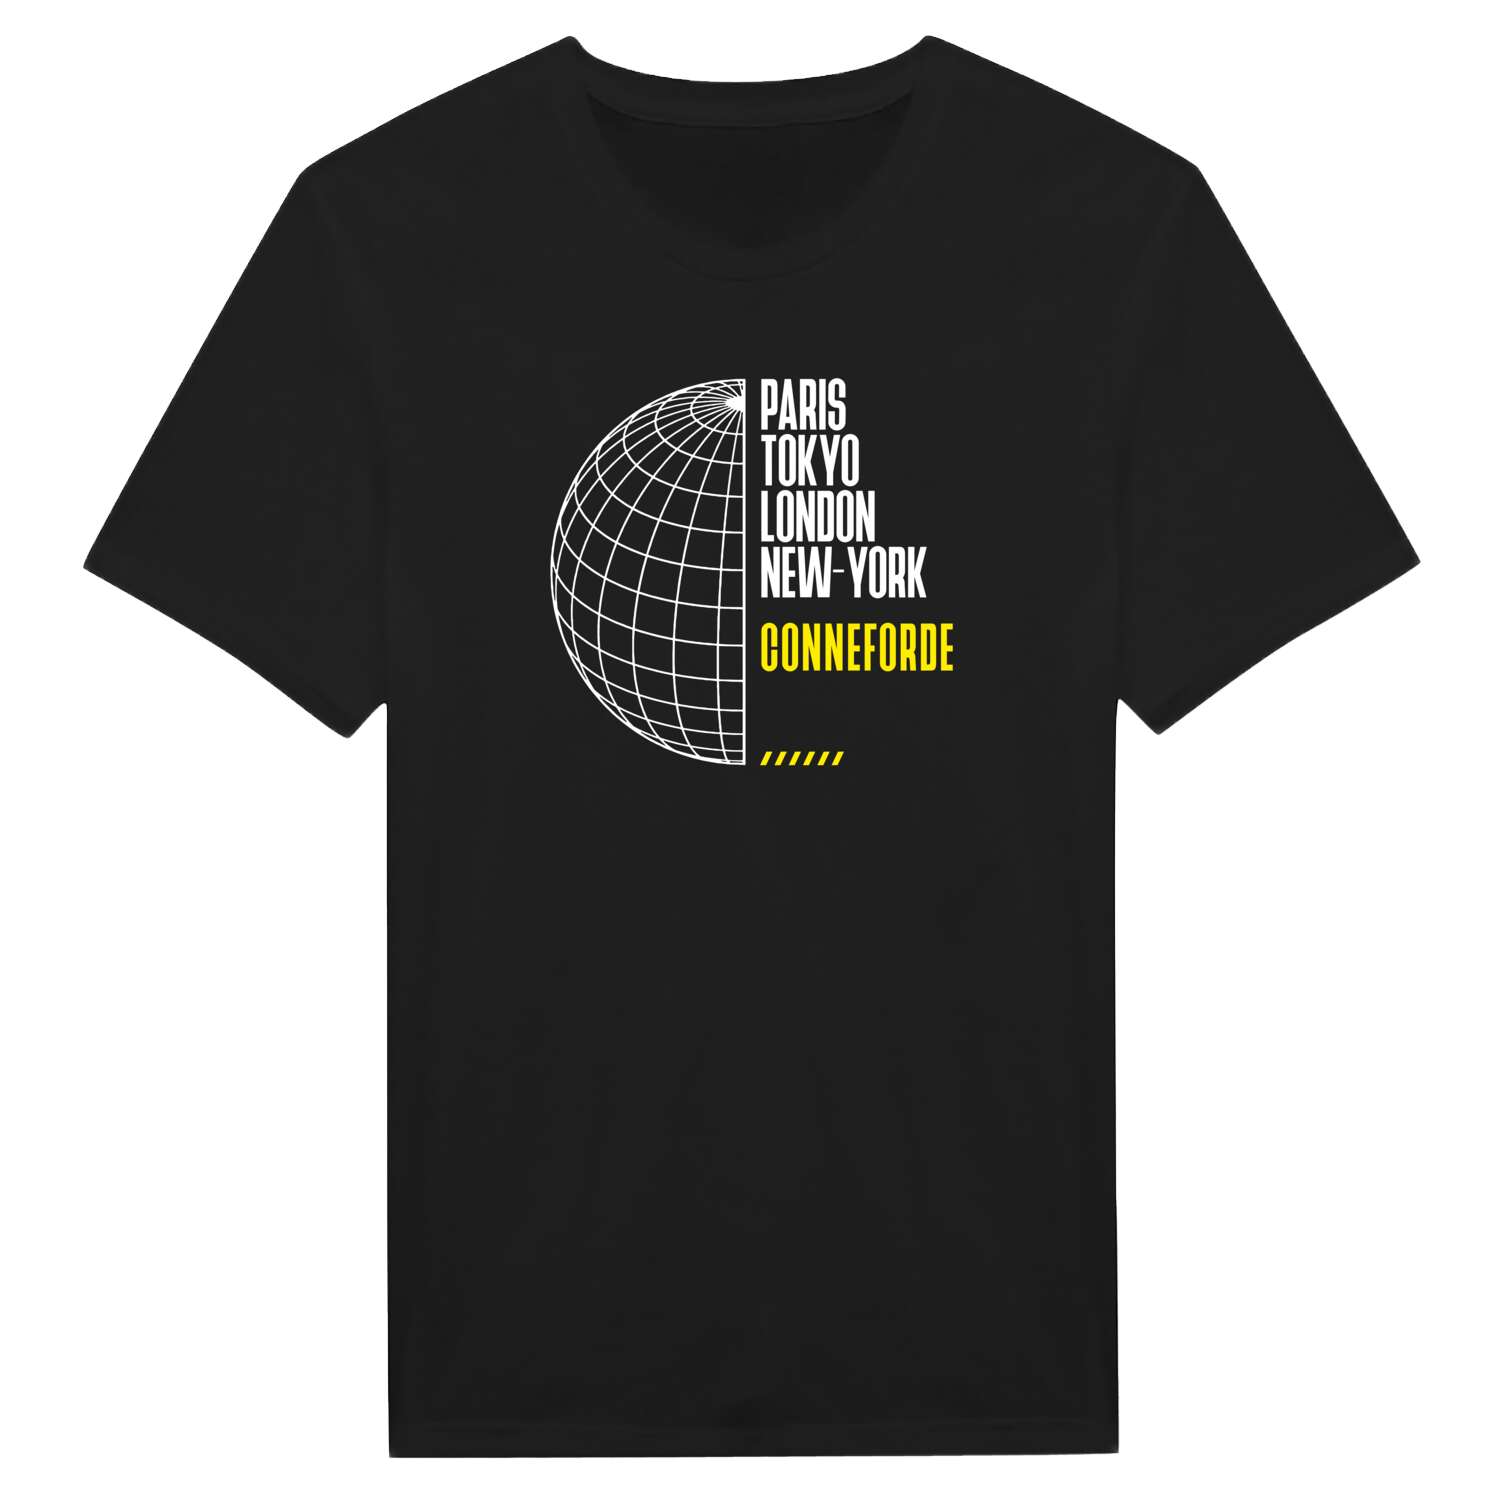 Conneforde T-Shirt »Paris Tokyo London«